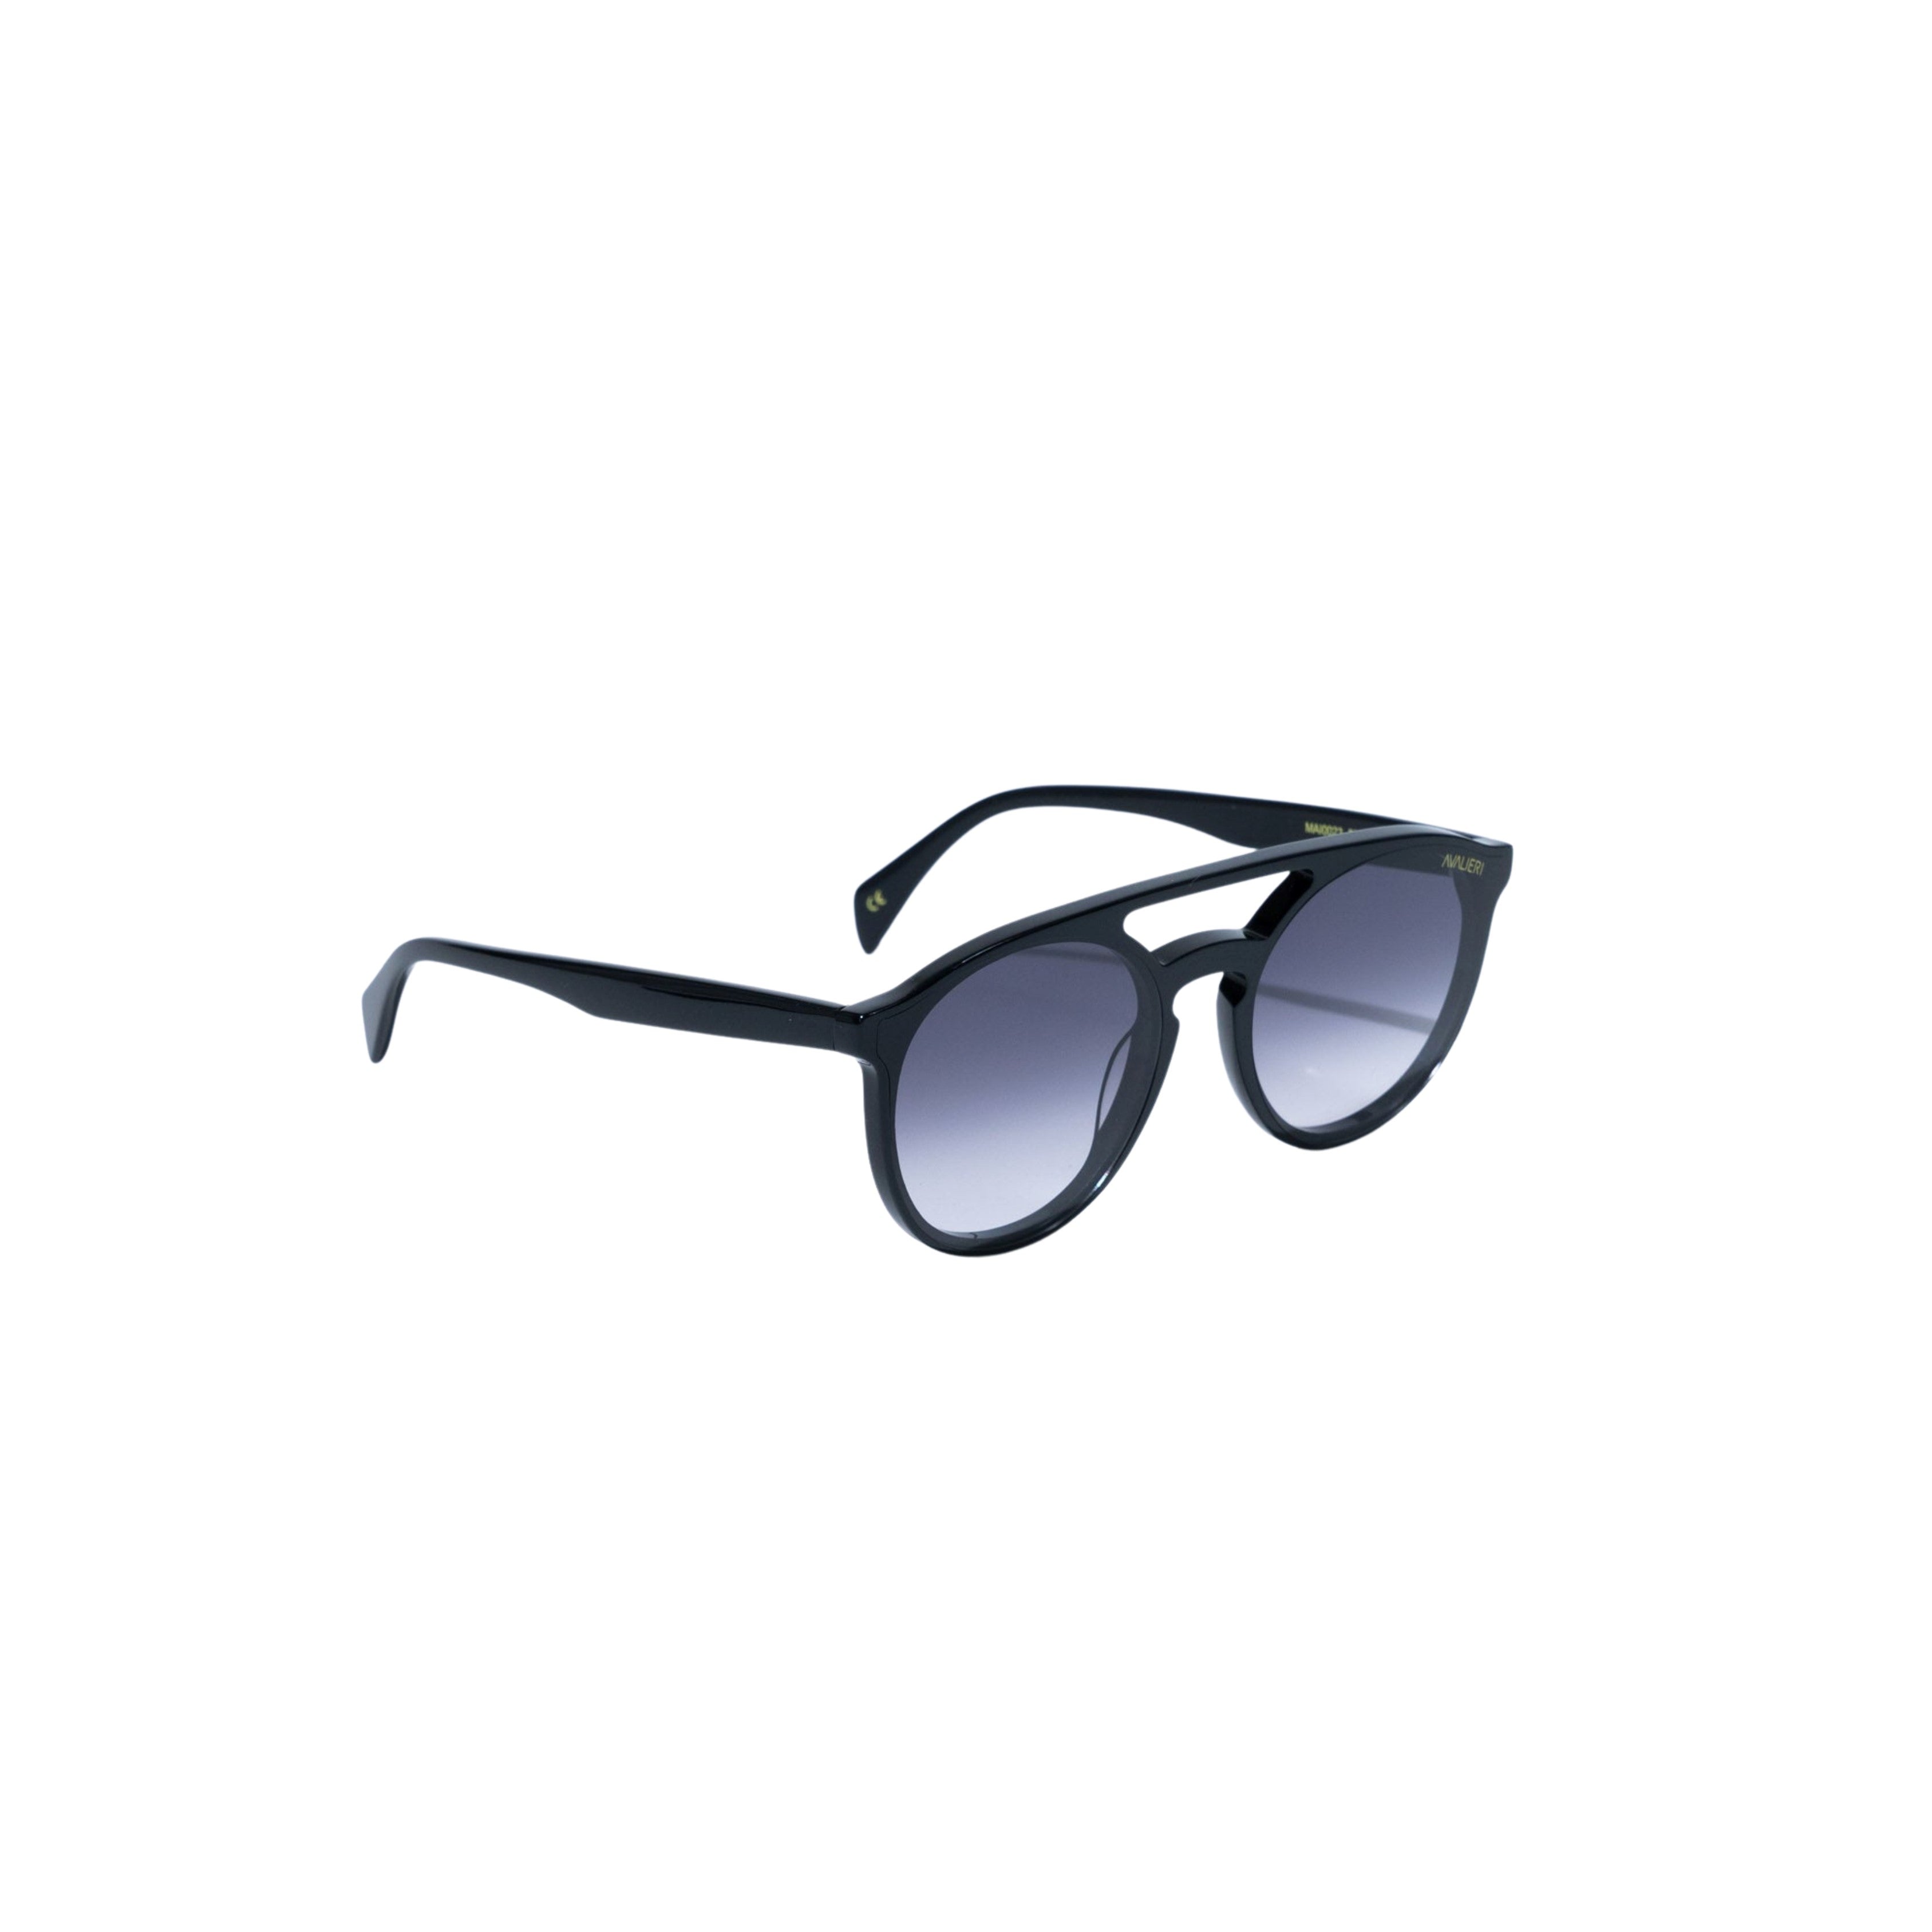 Avalieri Black Sunglasses for Men and Women - AVSG-0004